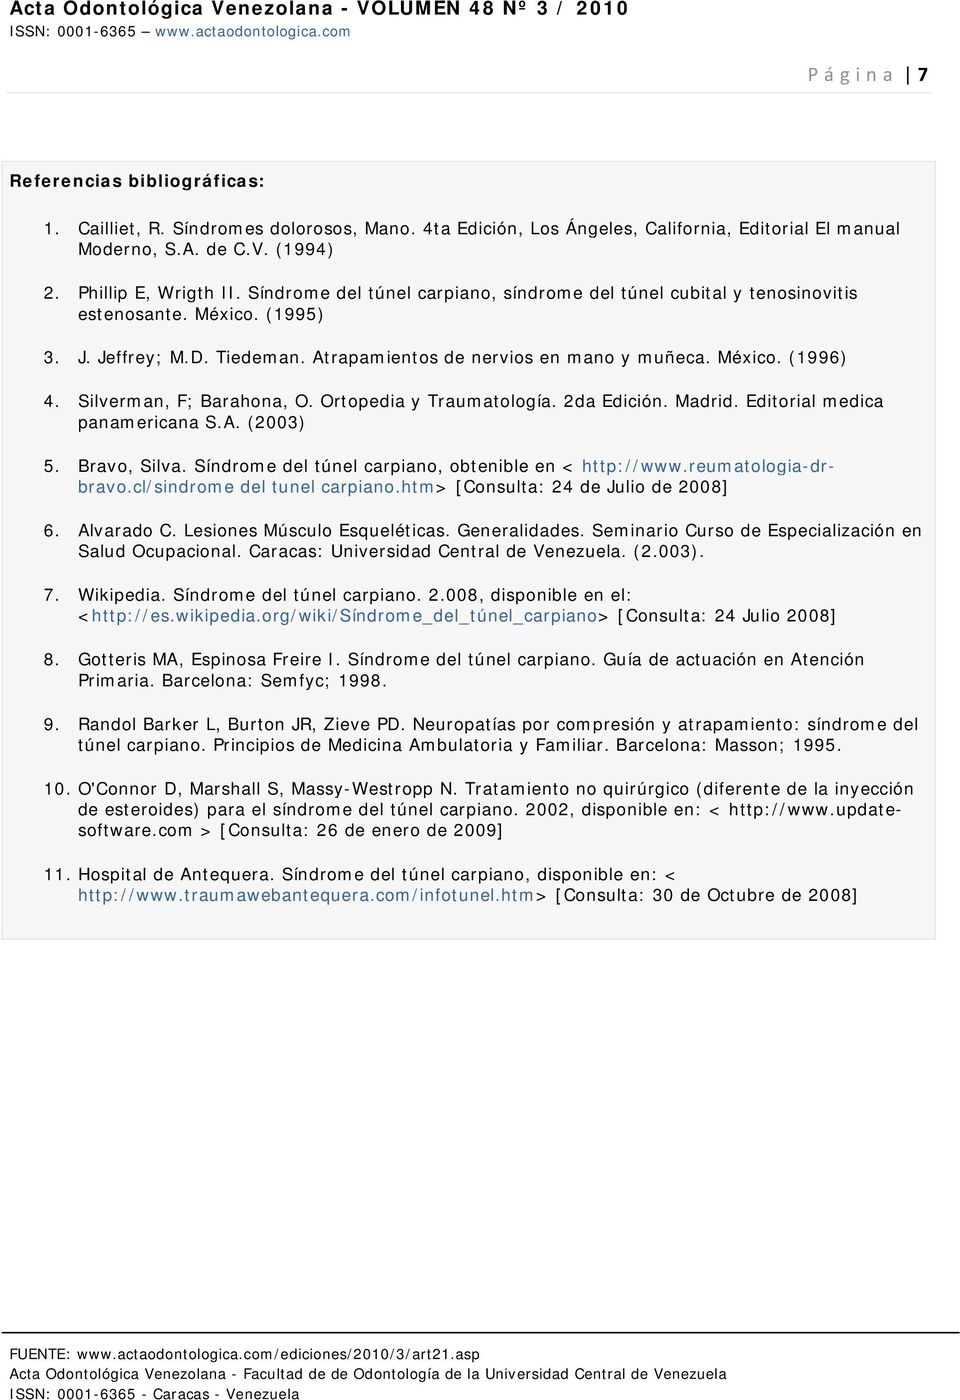 Silverman, F; Barahona, O. Ortopedia y Traumatología. 2da Edición. Madrid. Editorial medica panamericana S.A. (2003) 5. Bravo, Silva. Síndrome del túnel carpiano, obtenible en < http://www.